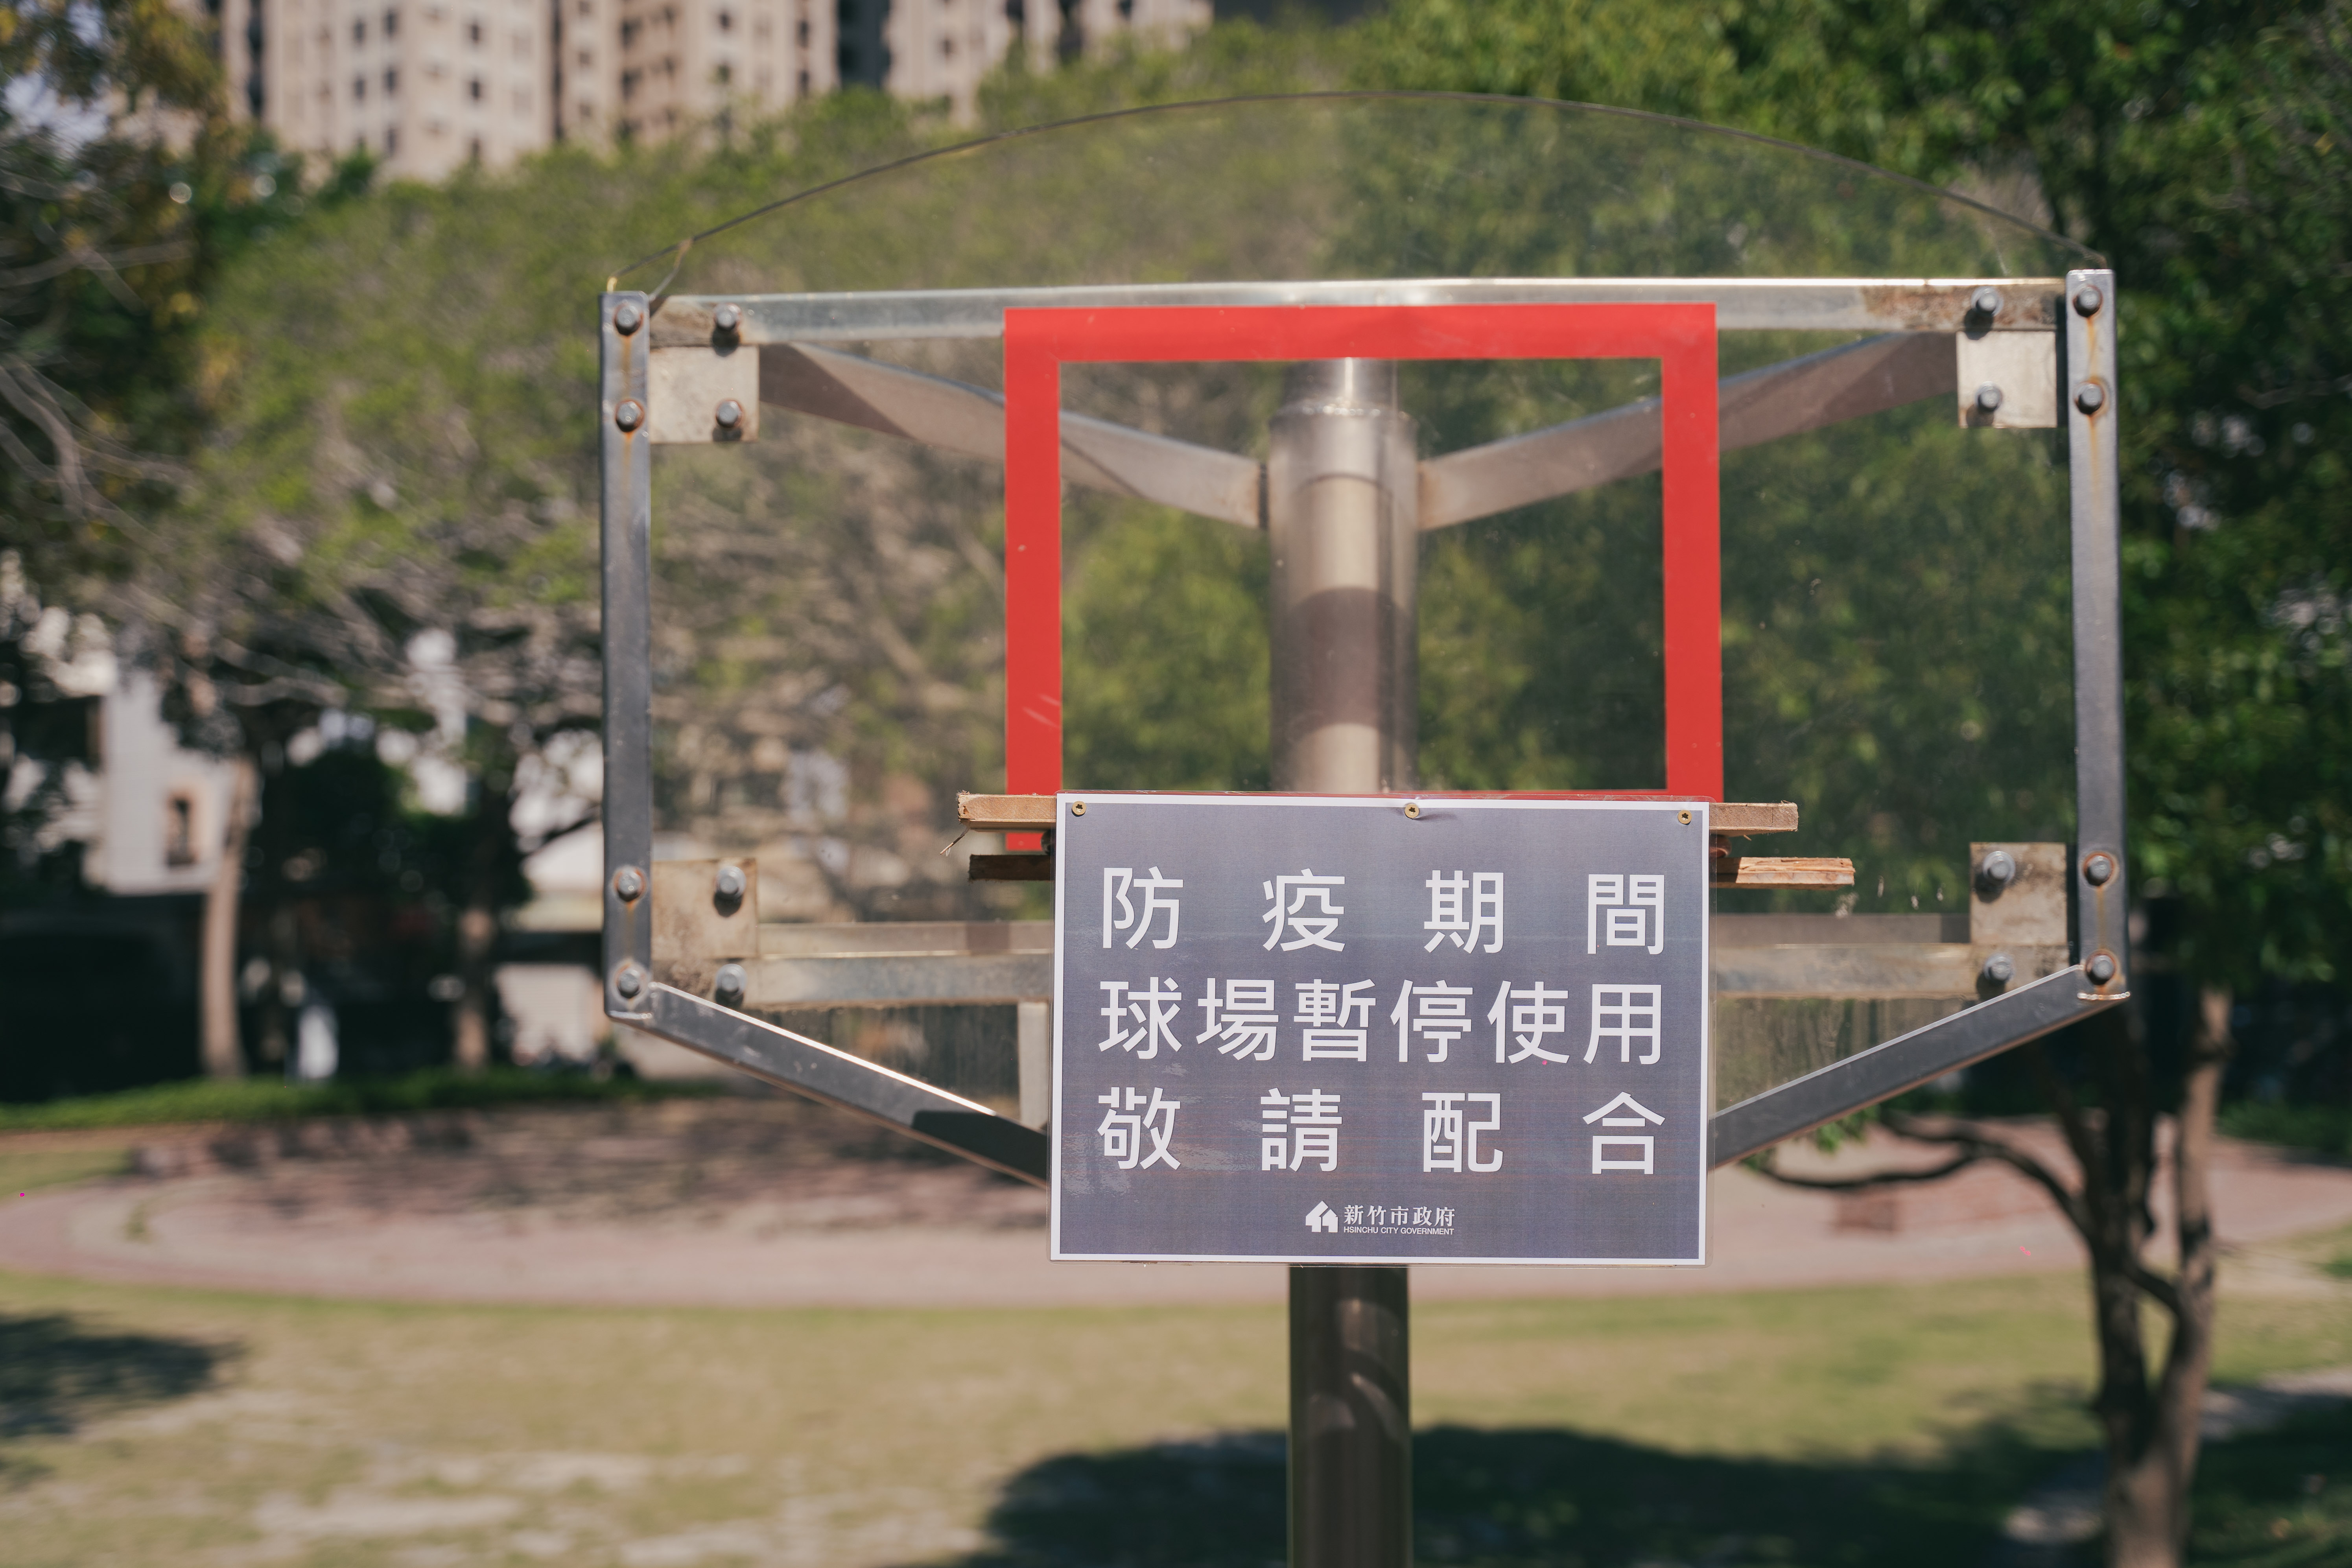 竹市今起封閉公園遊具、涼亭、戶外籃球框。